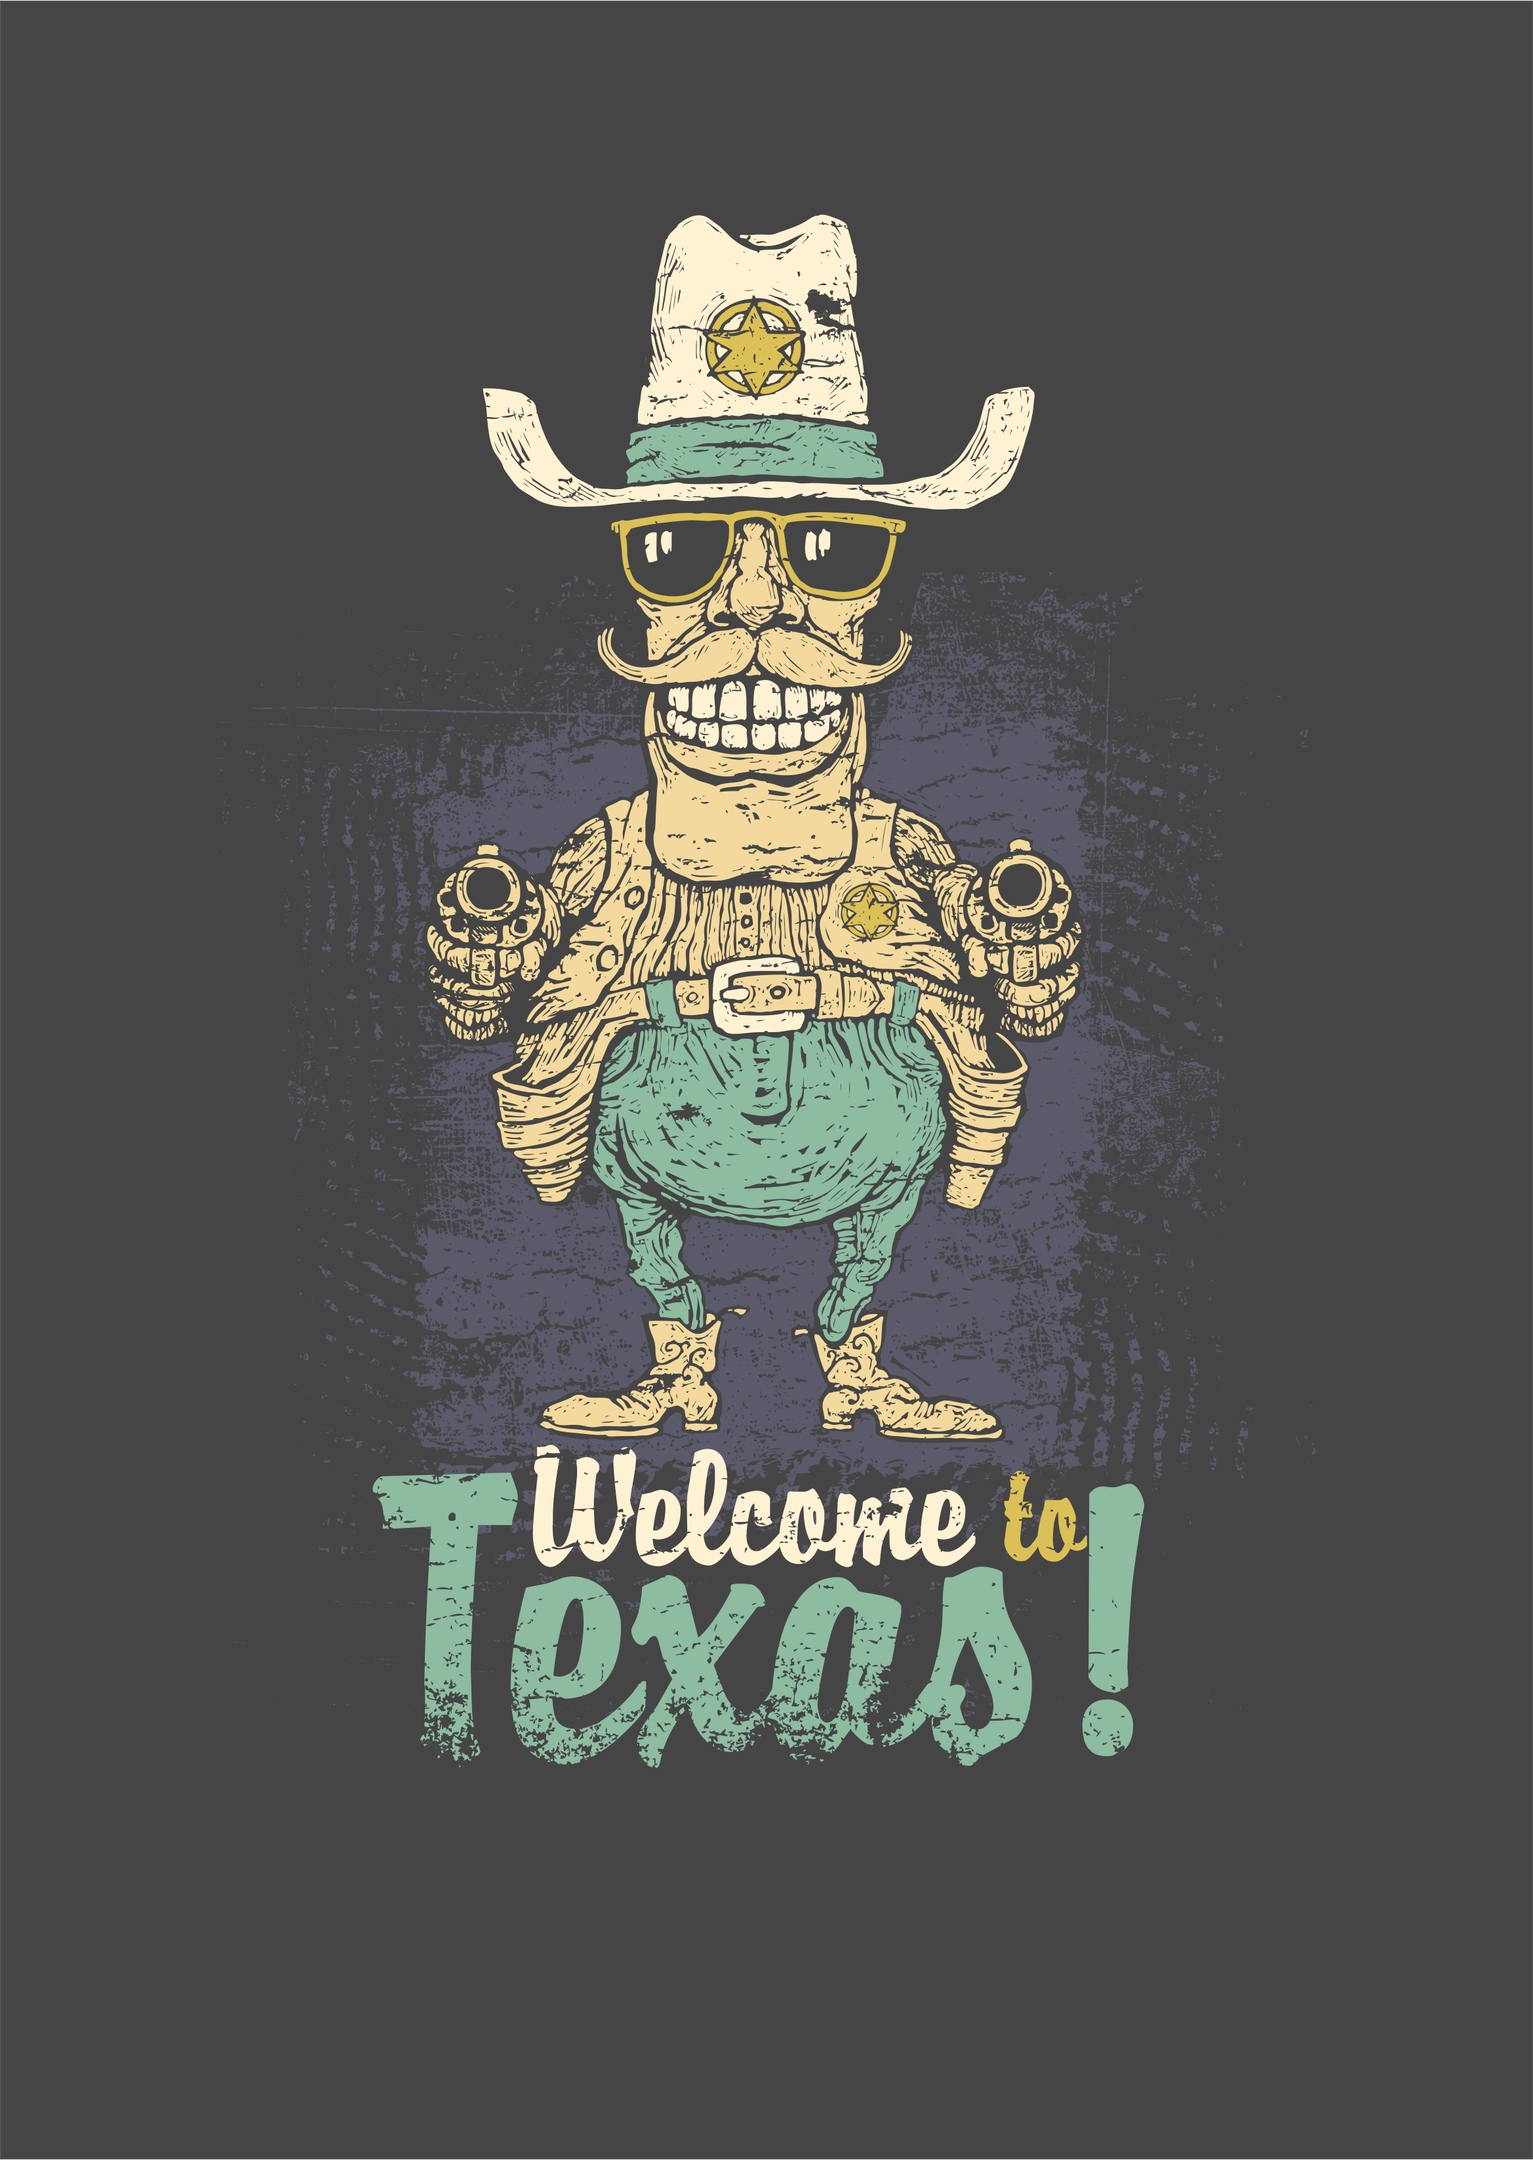 टेक्सास प्रिंट में आपका स्वागत है